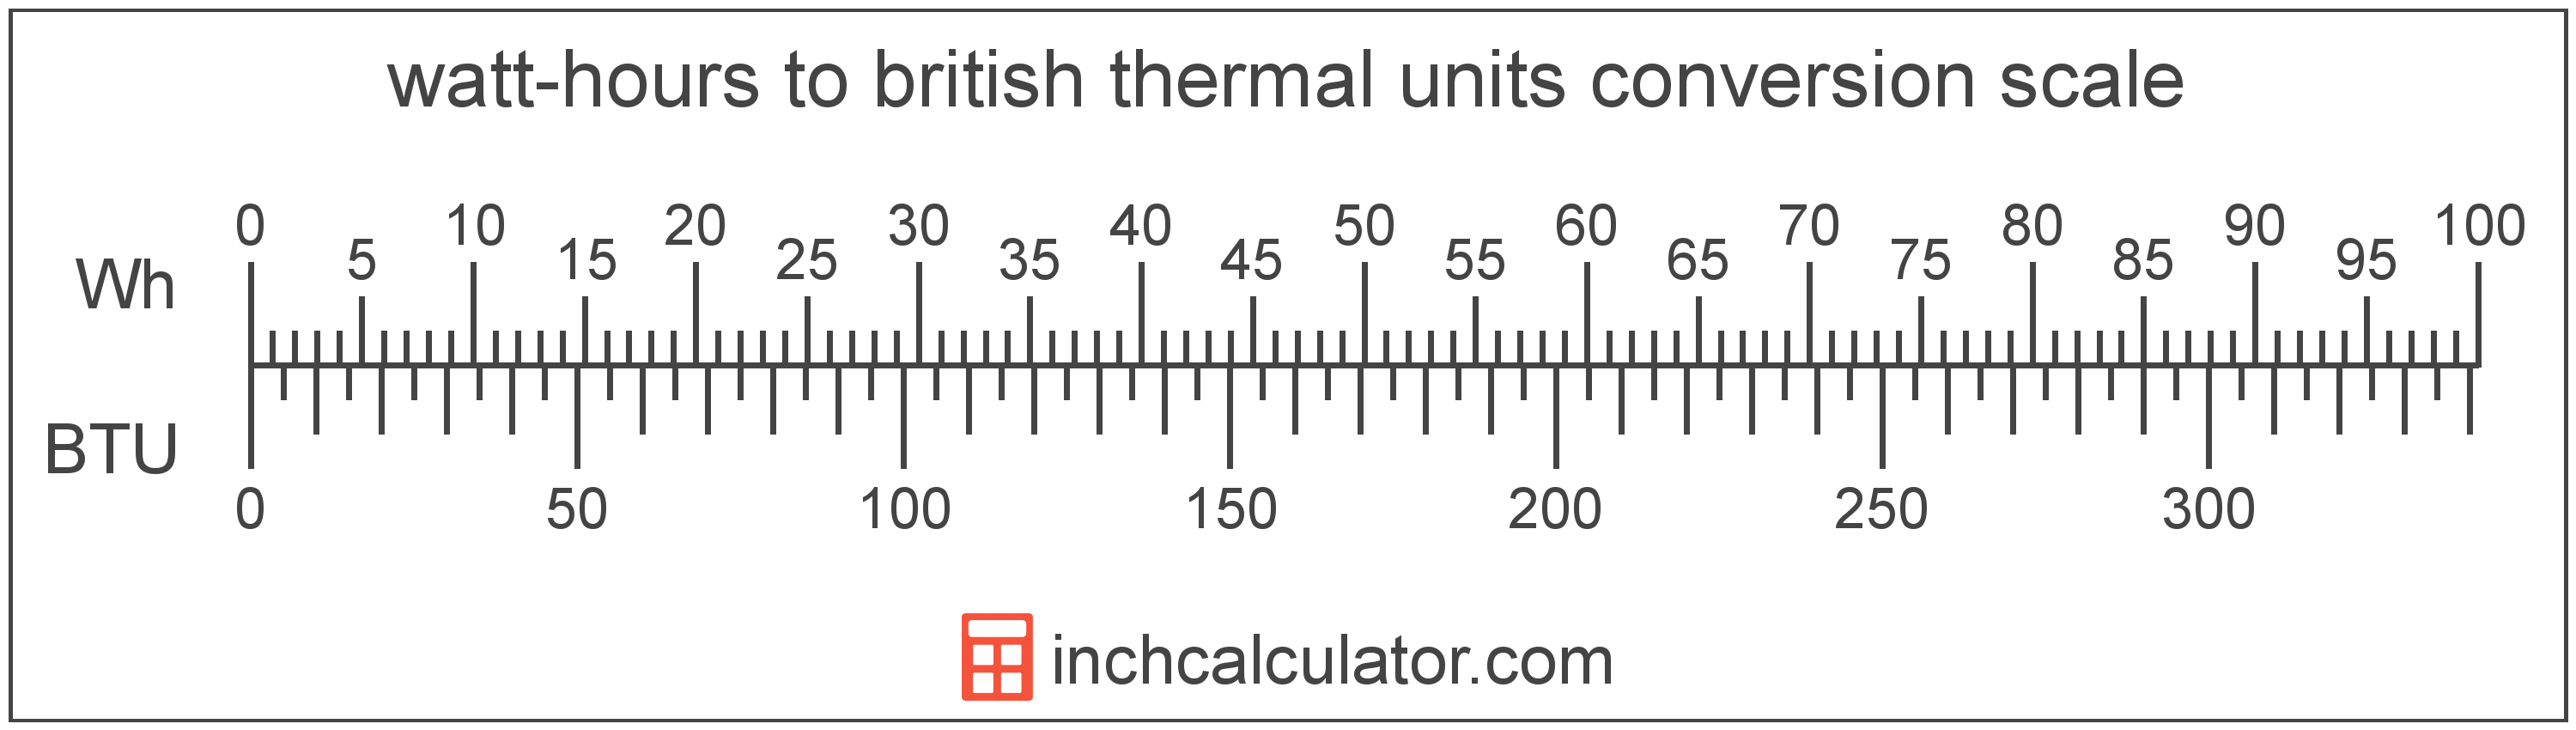 watt-hours-to-btu-conversion-wh-to-btu-inch-calculator